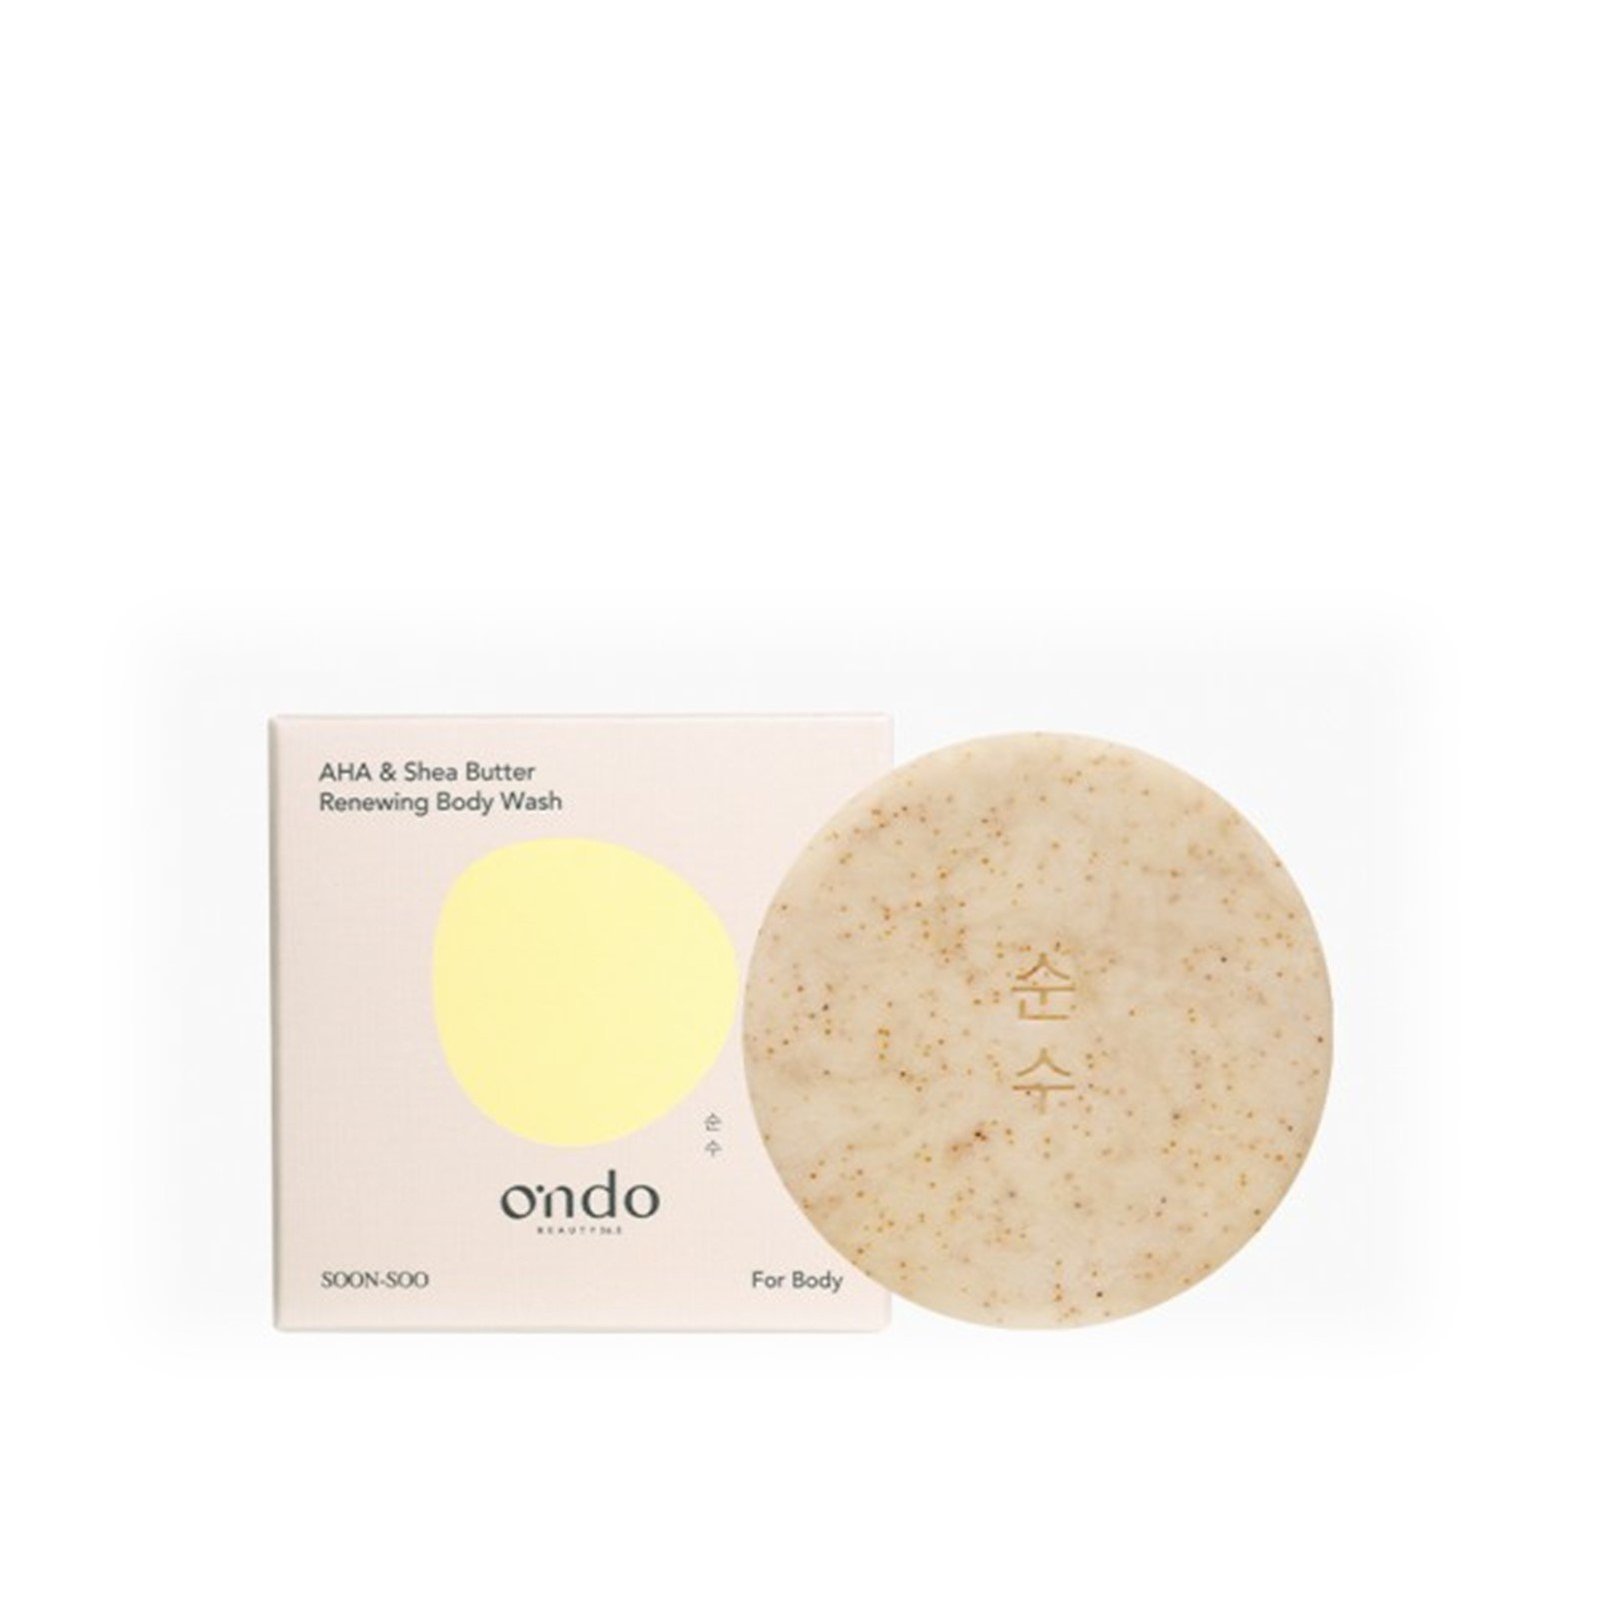 Ondo Beauty 36.5 AHA & Shea Butter Renewing Body Wash 70g (2.4 oz)